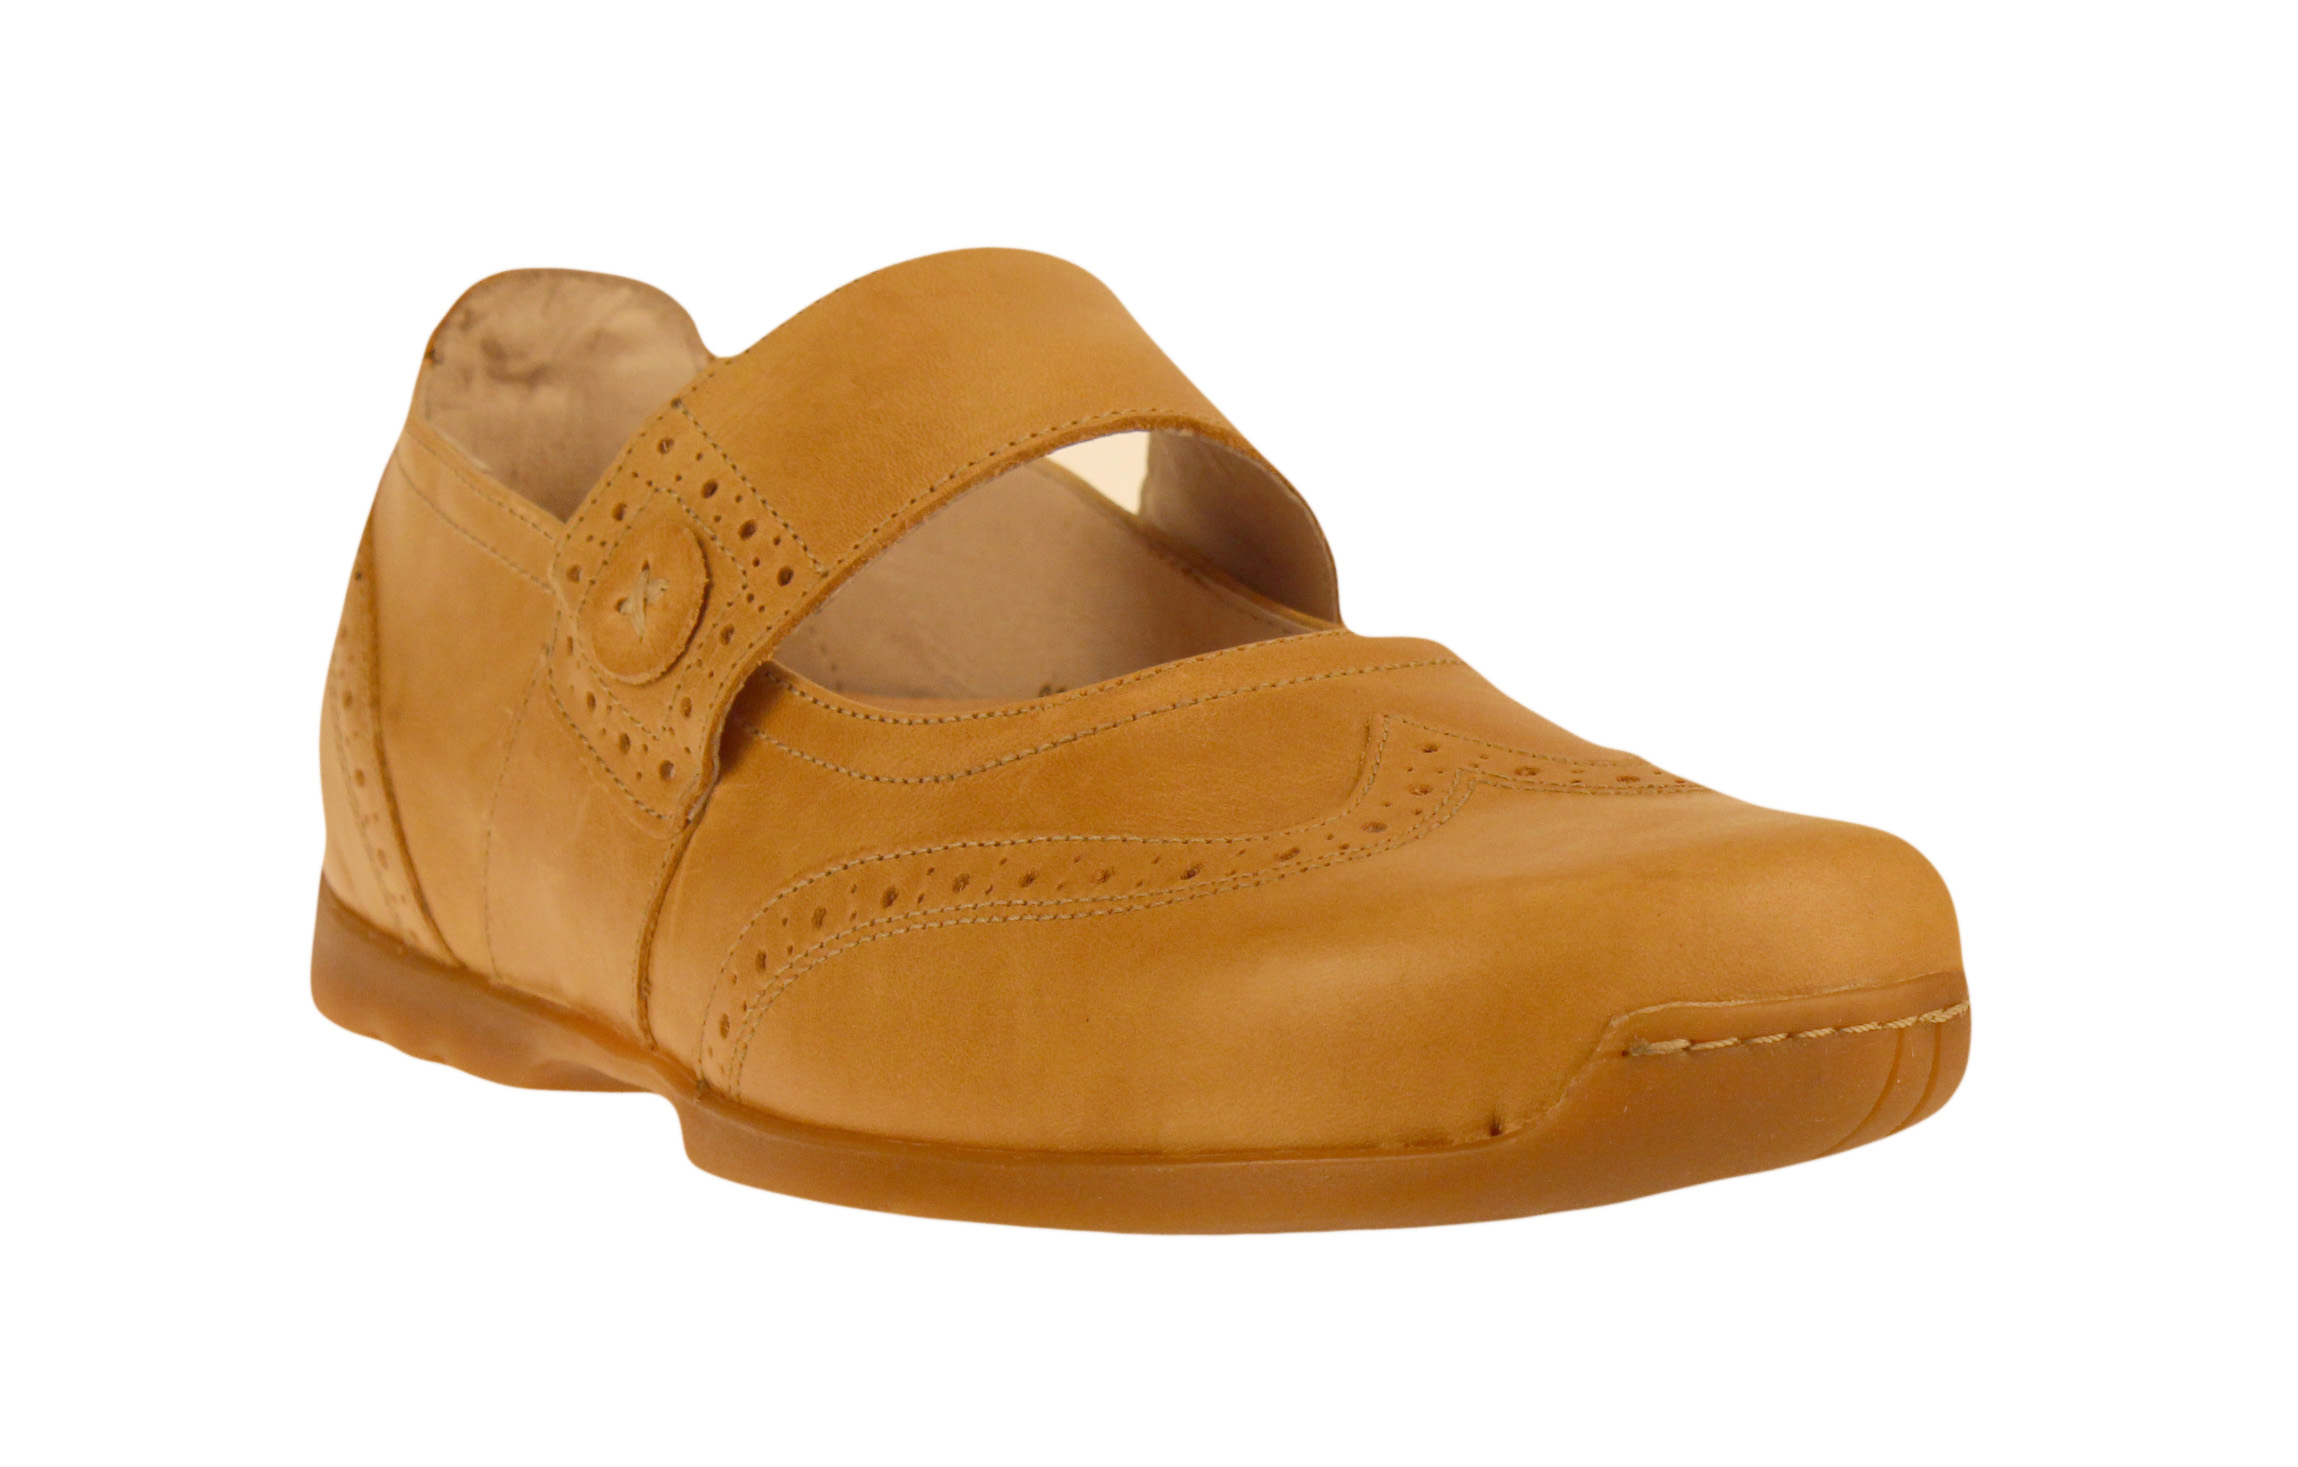 Footprints by Birkenstock Elmira Leather Womens Shoes | eBay